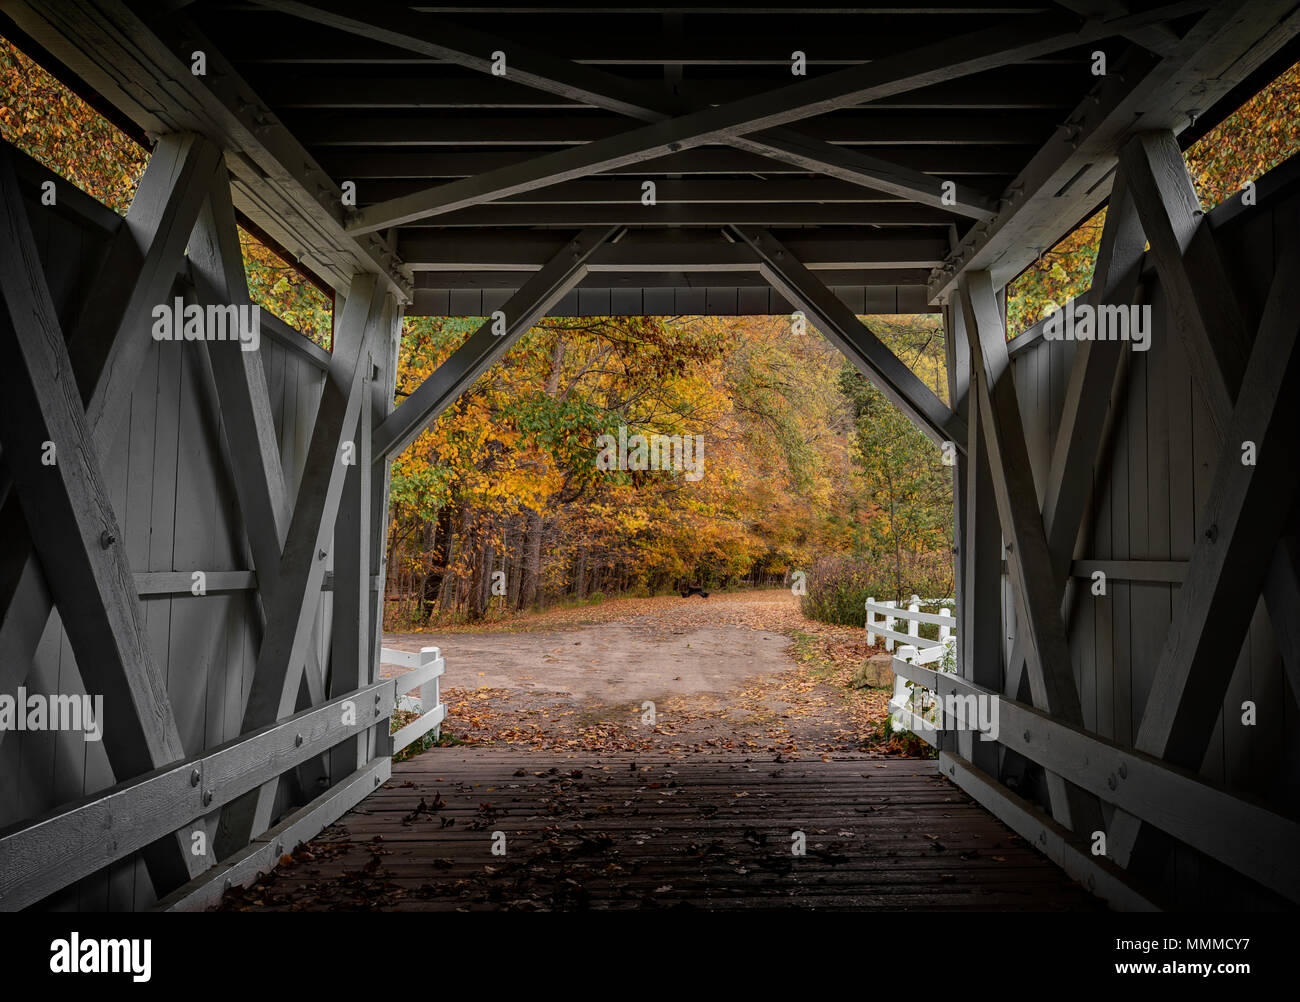 En voyant les belles couleurs d'automne de l'intérieur de l'Everett Road Covered Bridge dans le parc national de Cuyahoga Valley dans l'Ohio. Banque D'Images